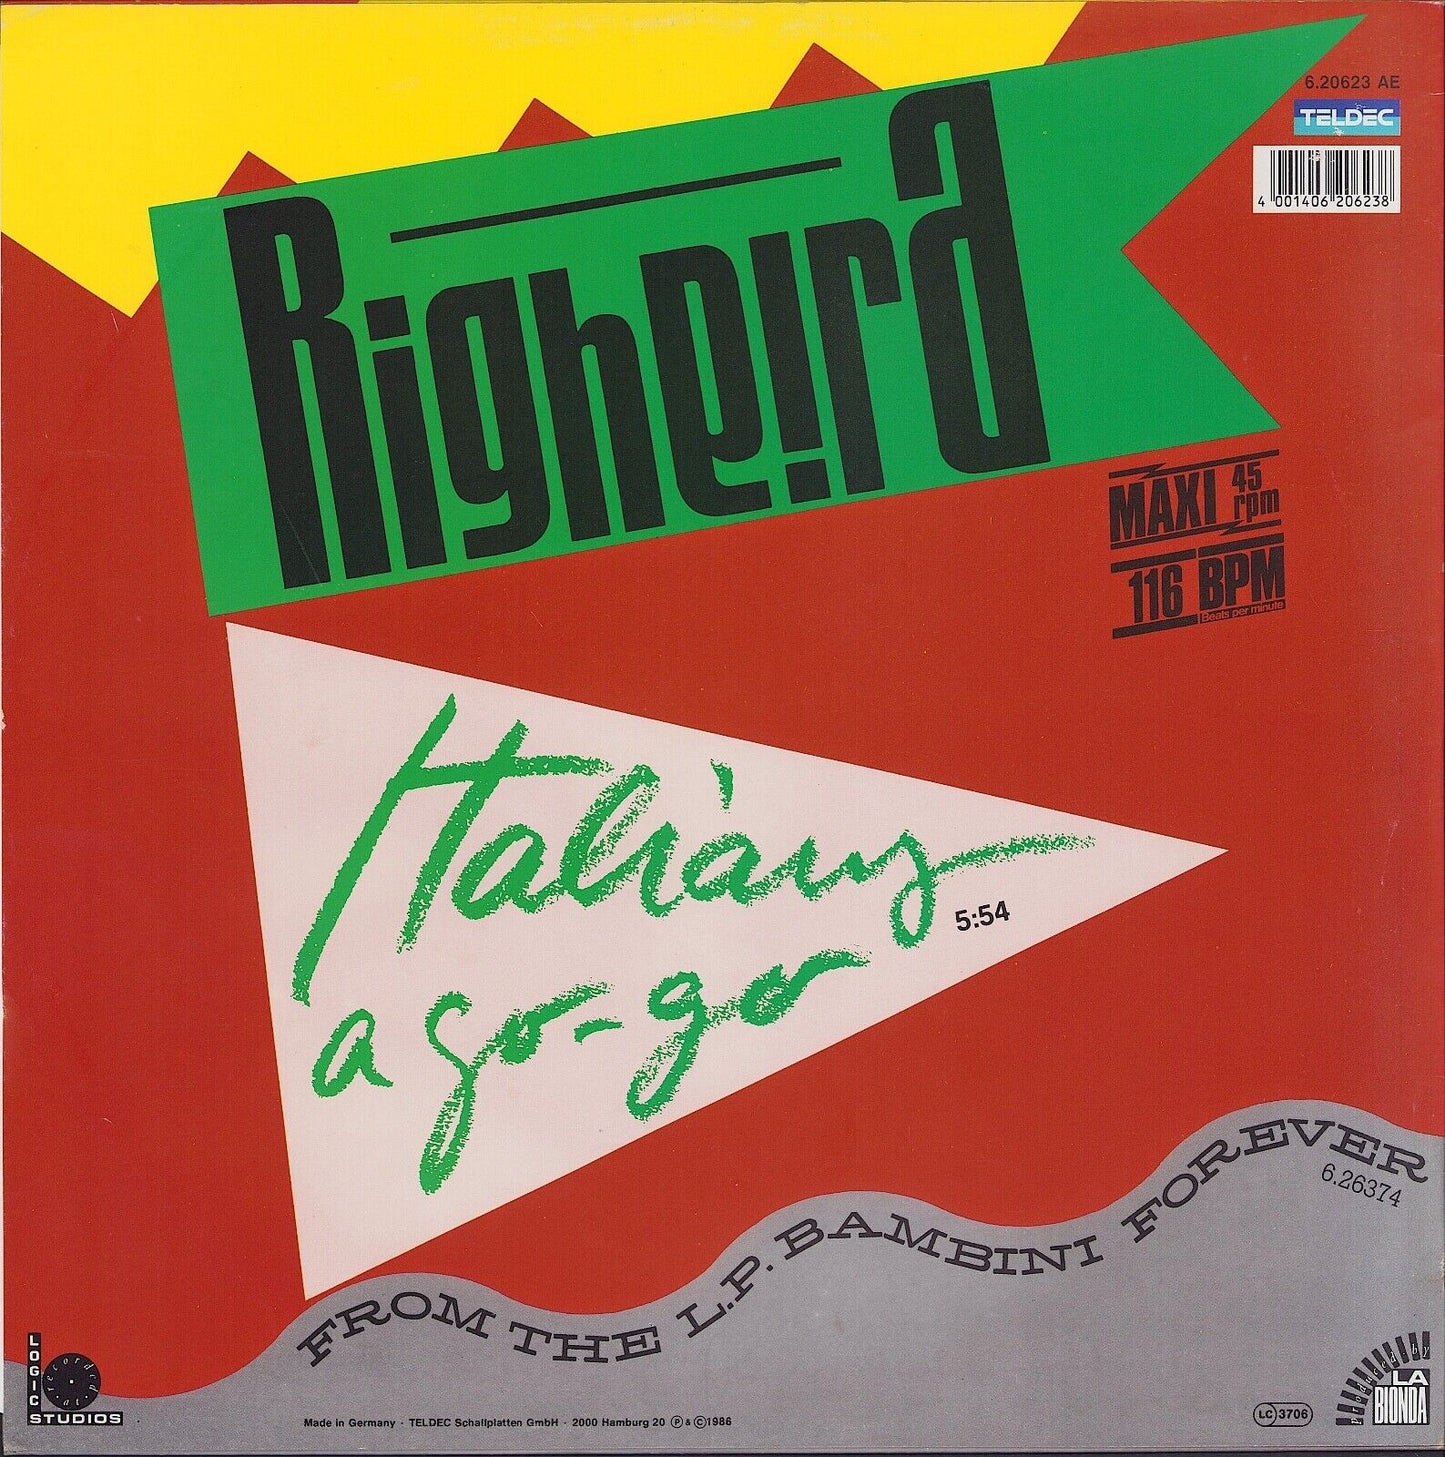 Righeira - Italians A Go-Go Vinyl 12"